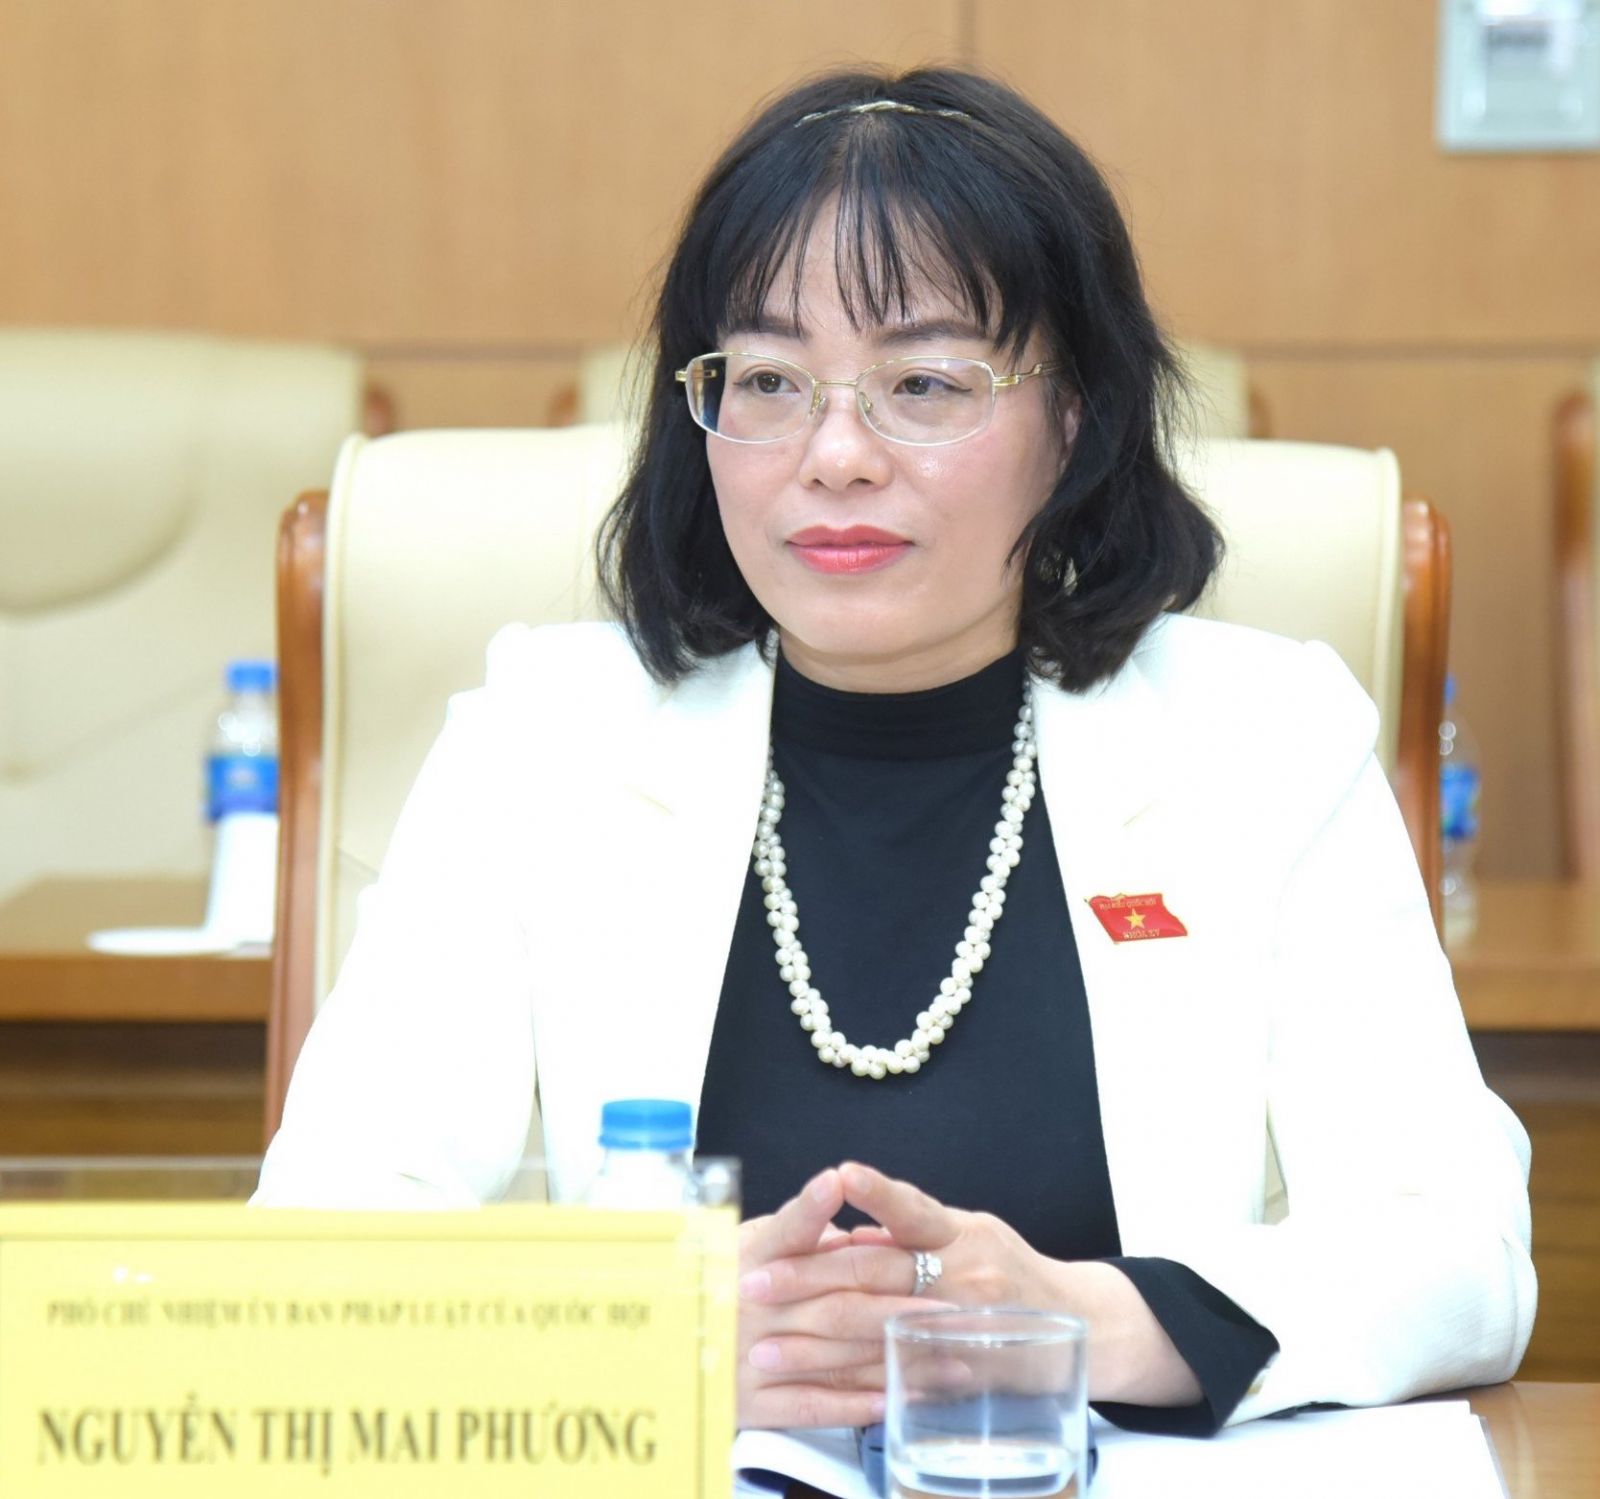 Bà Nguyễn Thị Mai Phương